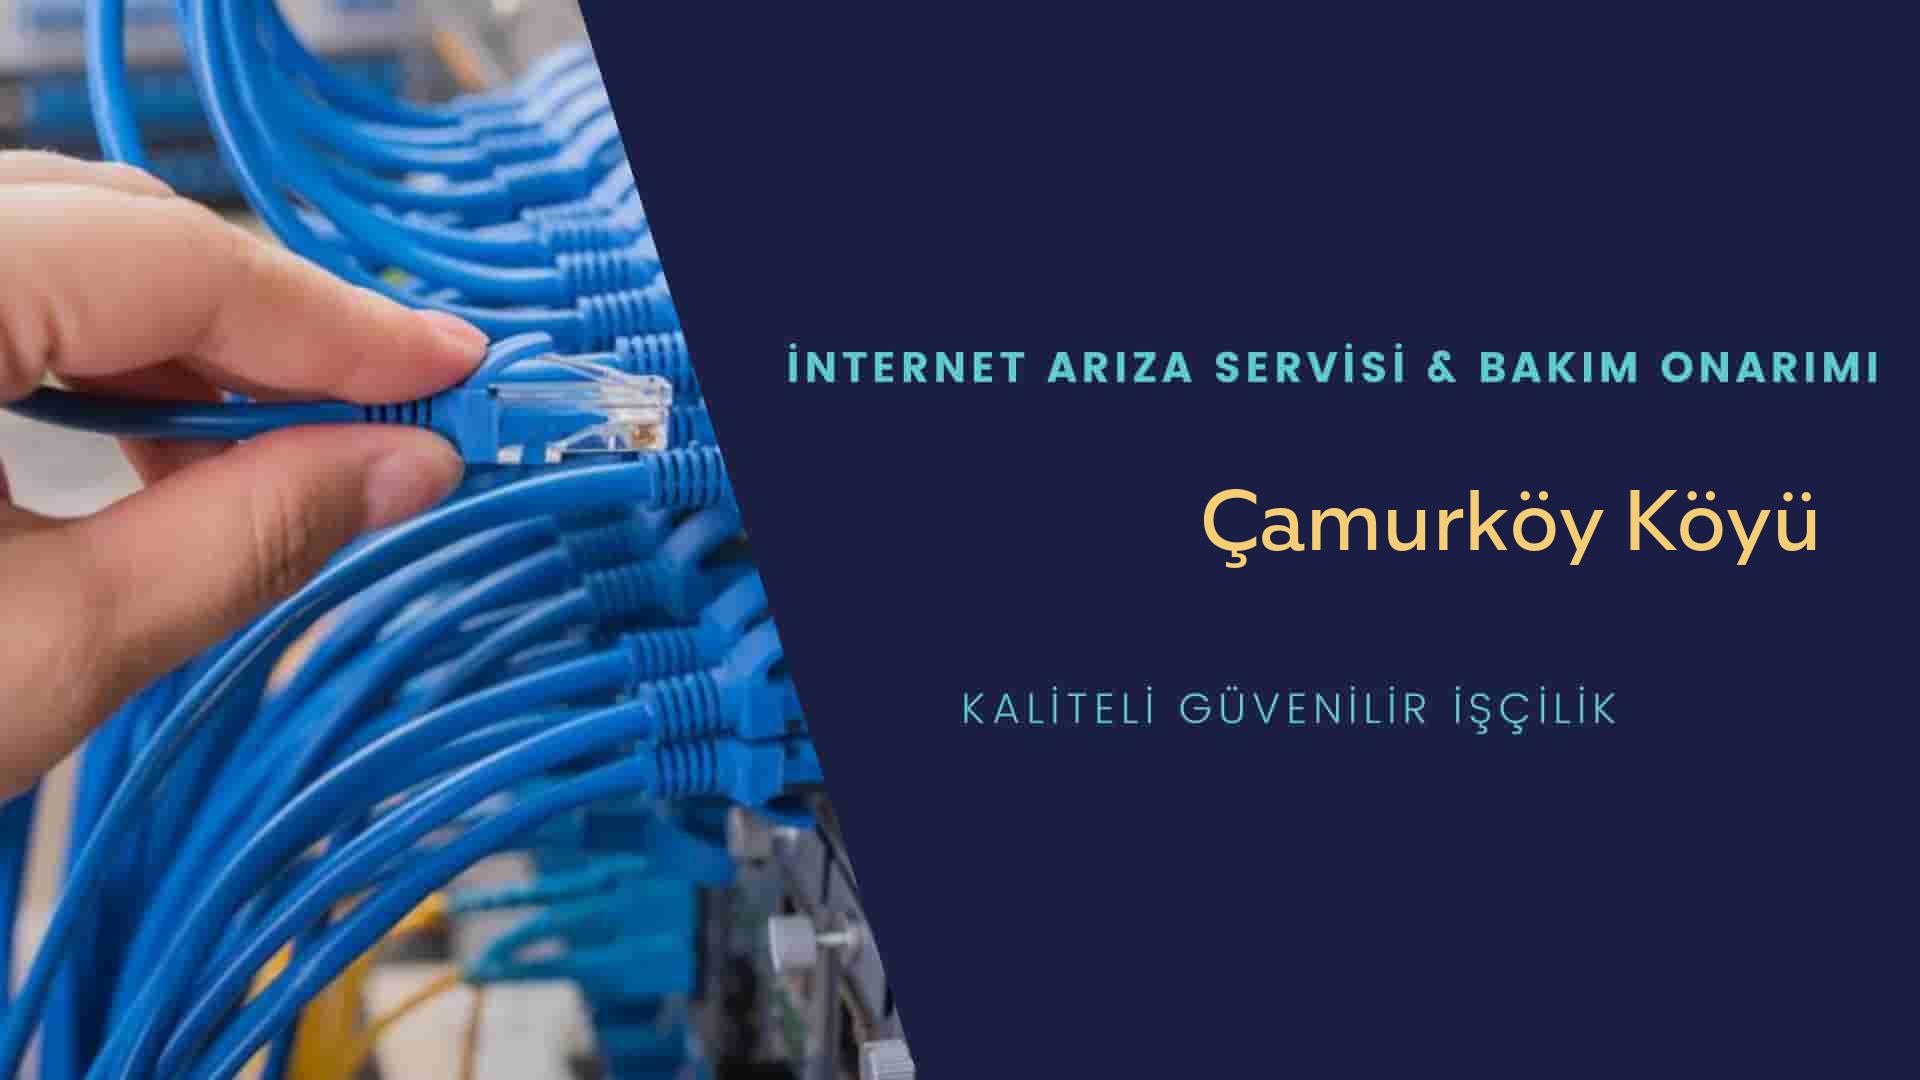 Çamurköy Köyü internet kablosu çekimi yapan yerler veya elektrikçiler mi? arıyorsunuz doğru yerdesiniz o zaman sizlere 7/24 yardımcı olacak profesyonel ustalarımız bir telefon kadar yakındır size.